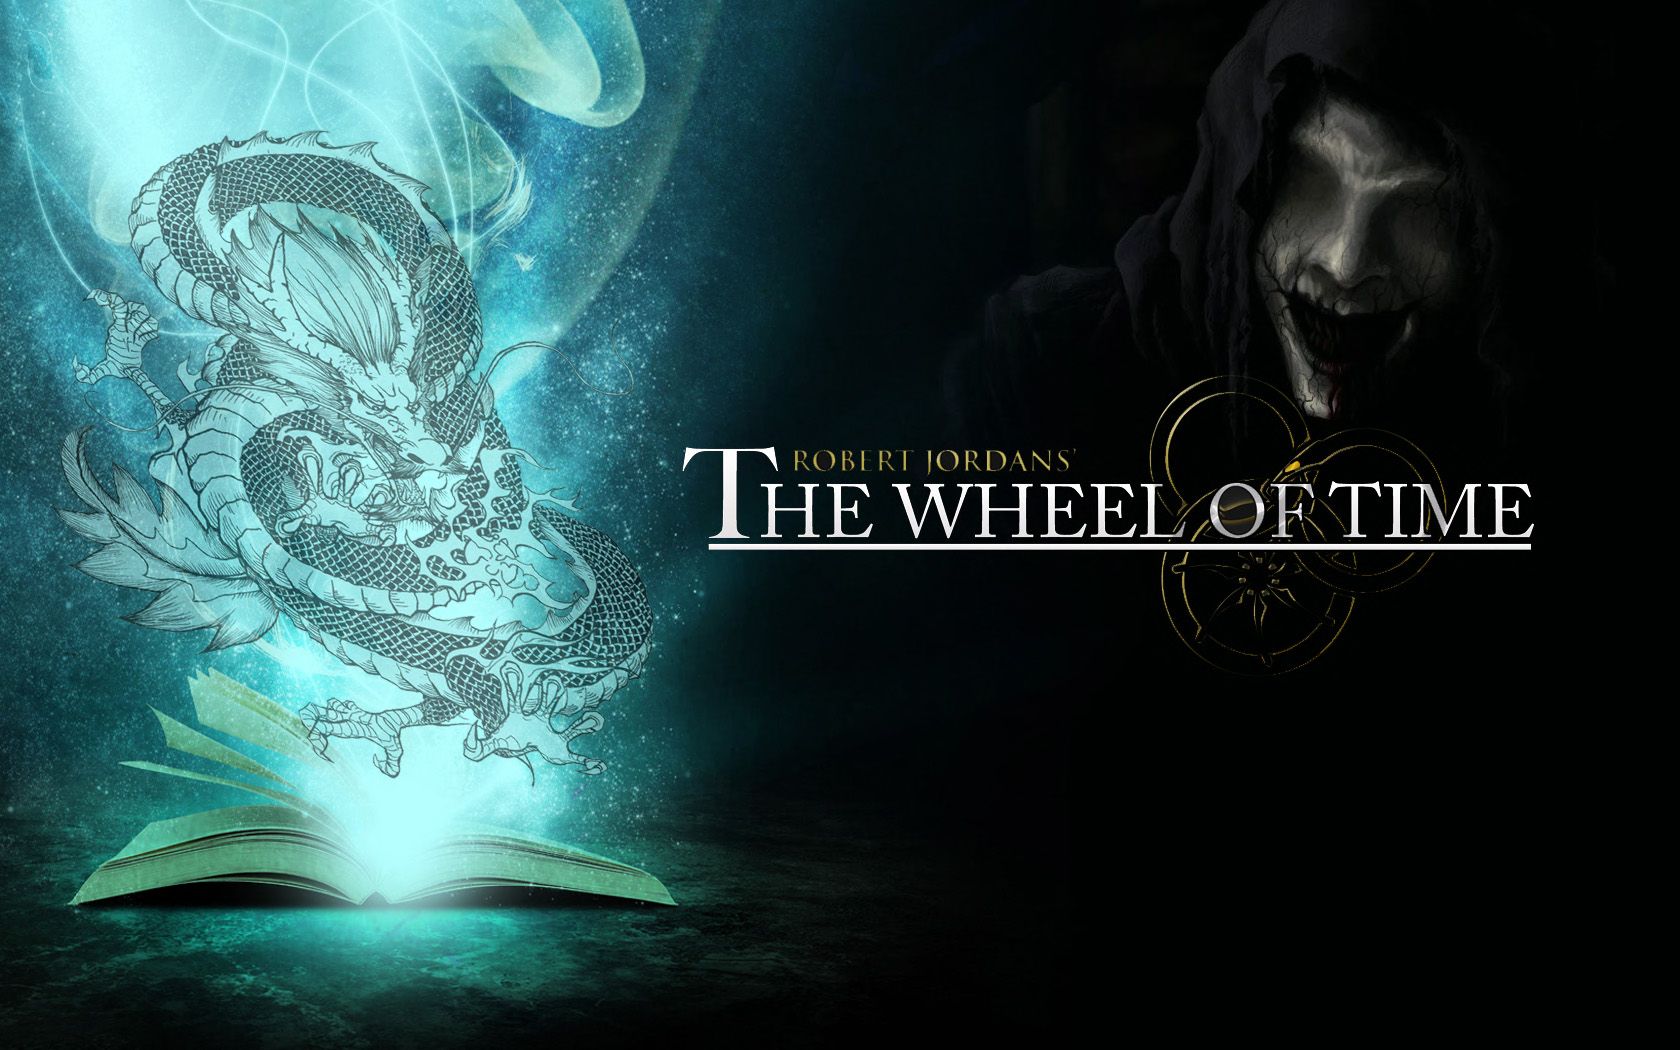 Amazons the Wheel of Time für dritte Staffel verlängert Titel